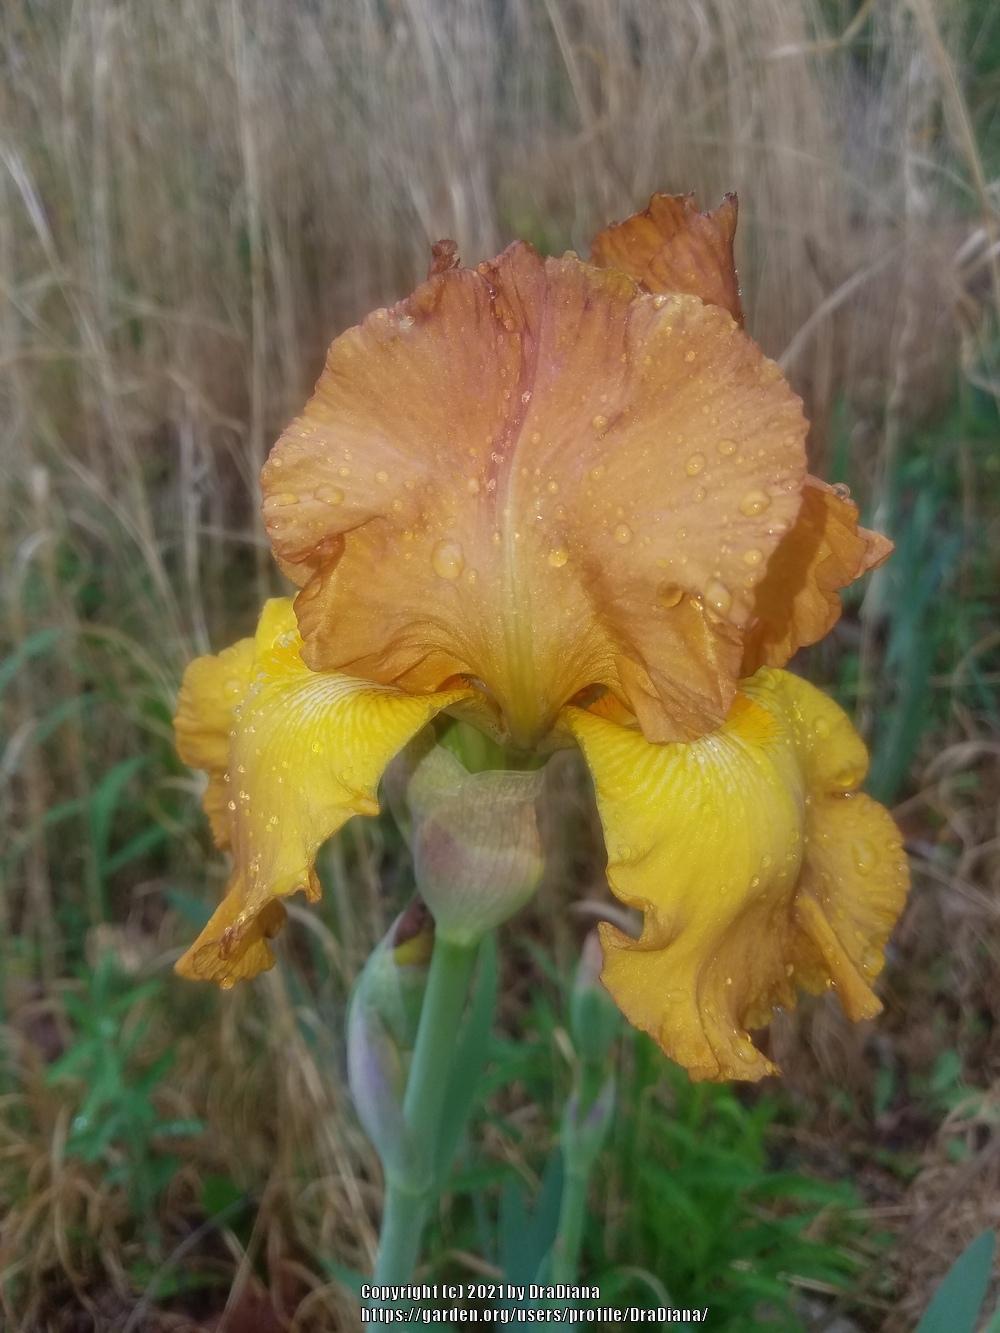 Photo of Tall Bearded Iris (Iris 'Boy Friend') uploaded by DraDiana